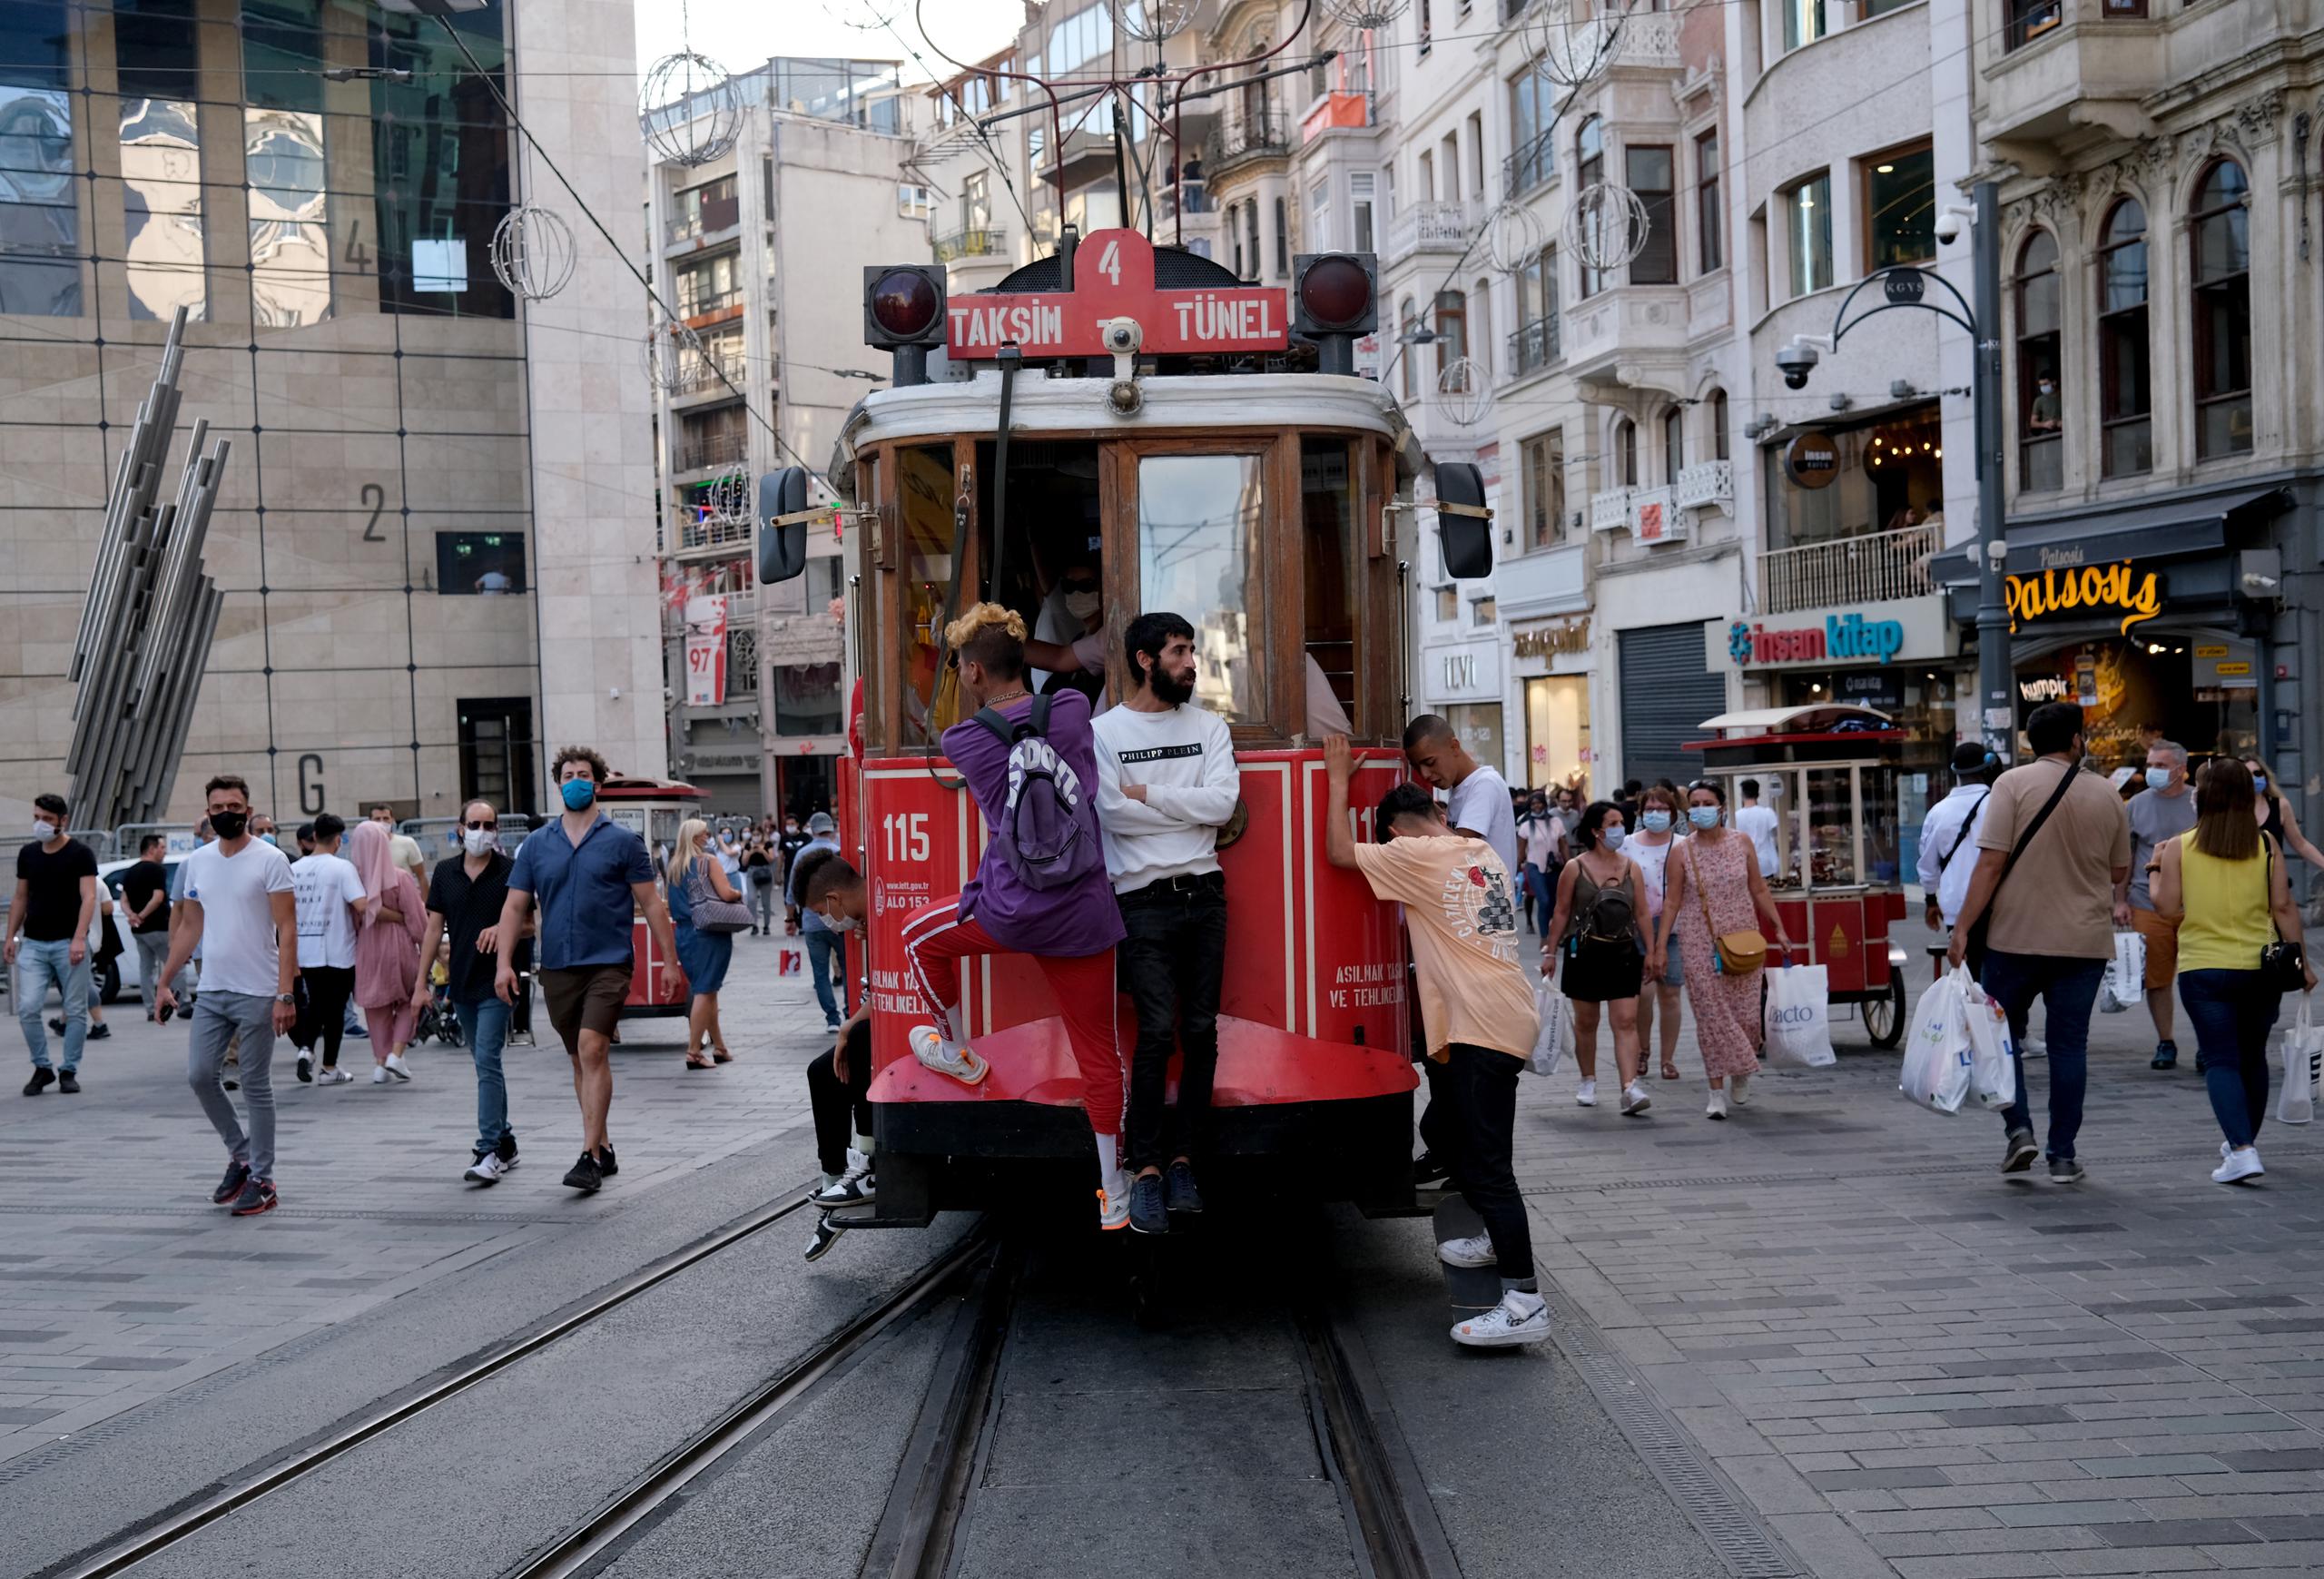 Personas caminan y viajan en tranvía en una calle de Estambul. EFE/EPA/SEDAT SUNA/ARCHIVO
